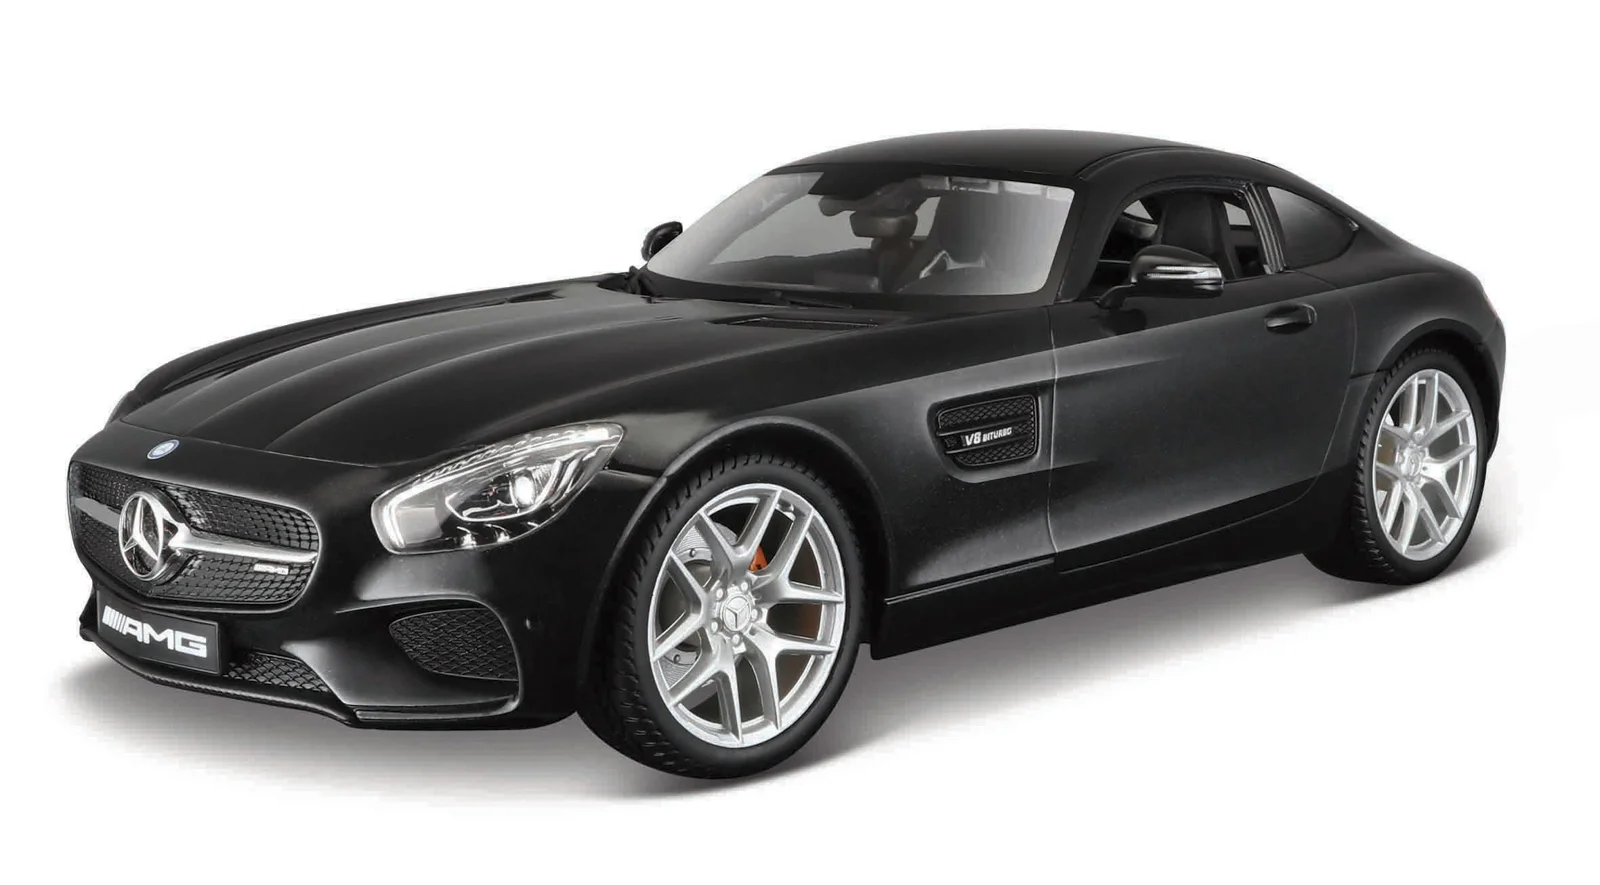 Maisto - Mercedes-AMG GT, metal černá, 1:18